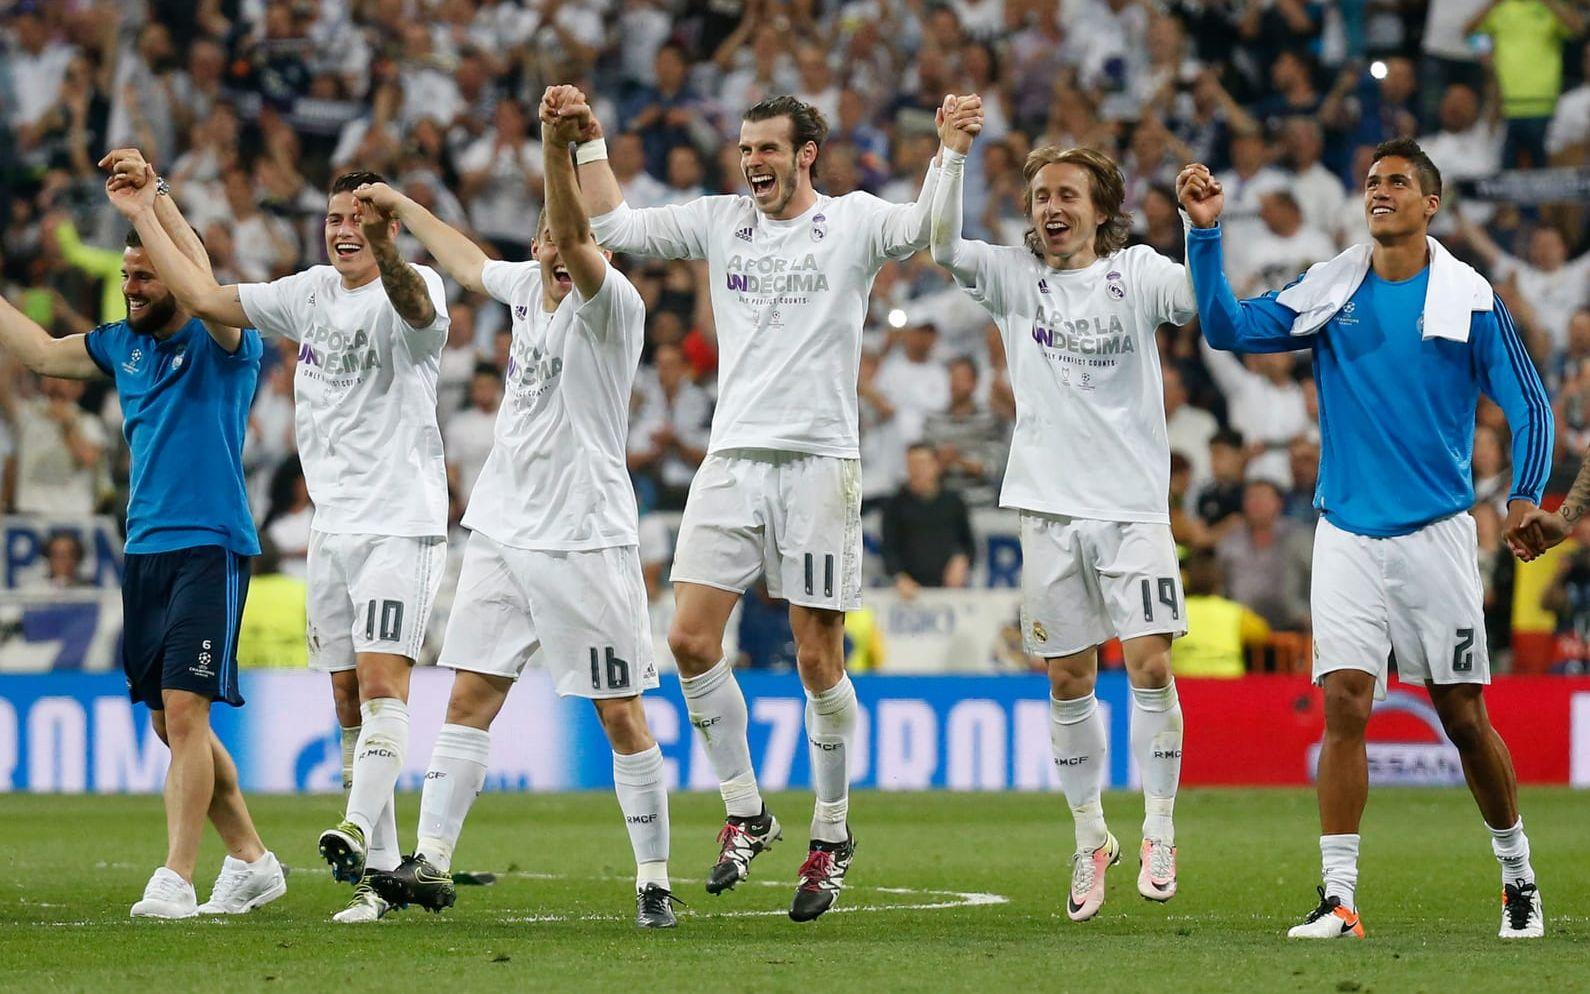 Senast Real Madrid vann Champions League var 2014, om några veckor spelar laget final i Milano. Foto: Bildbyrån